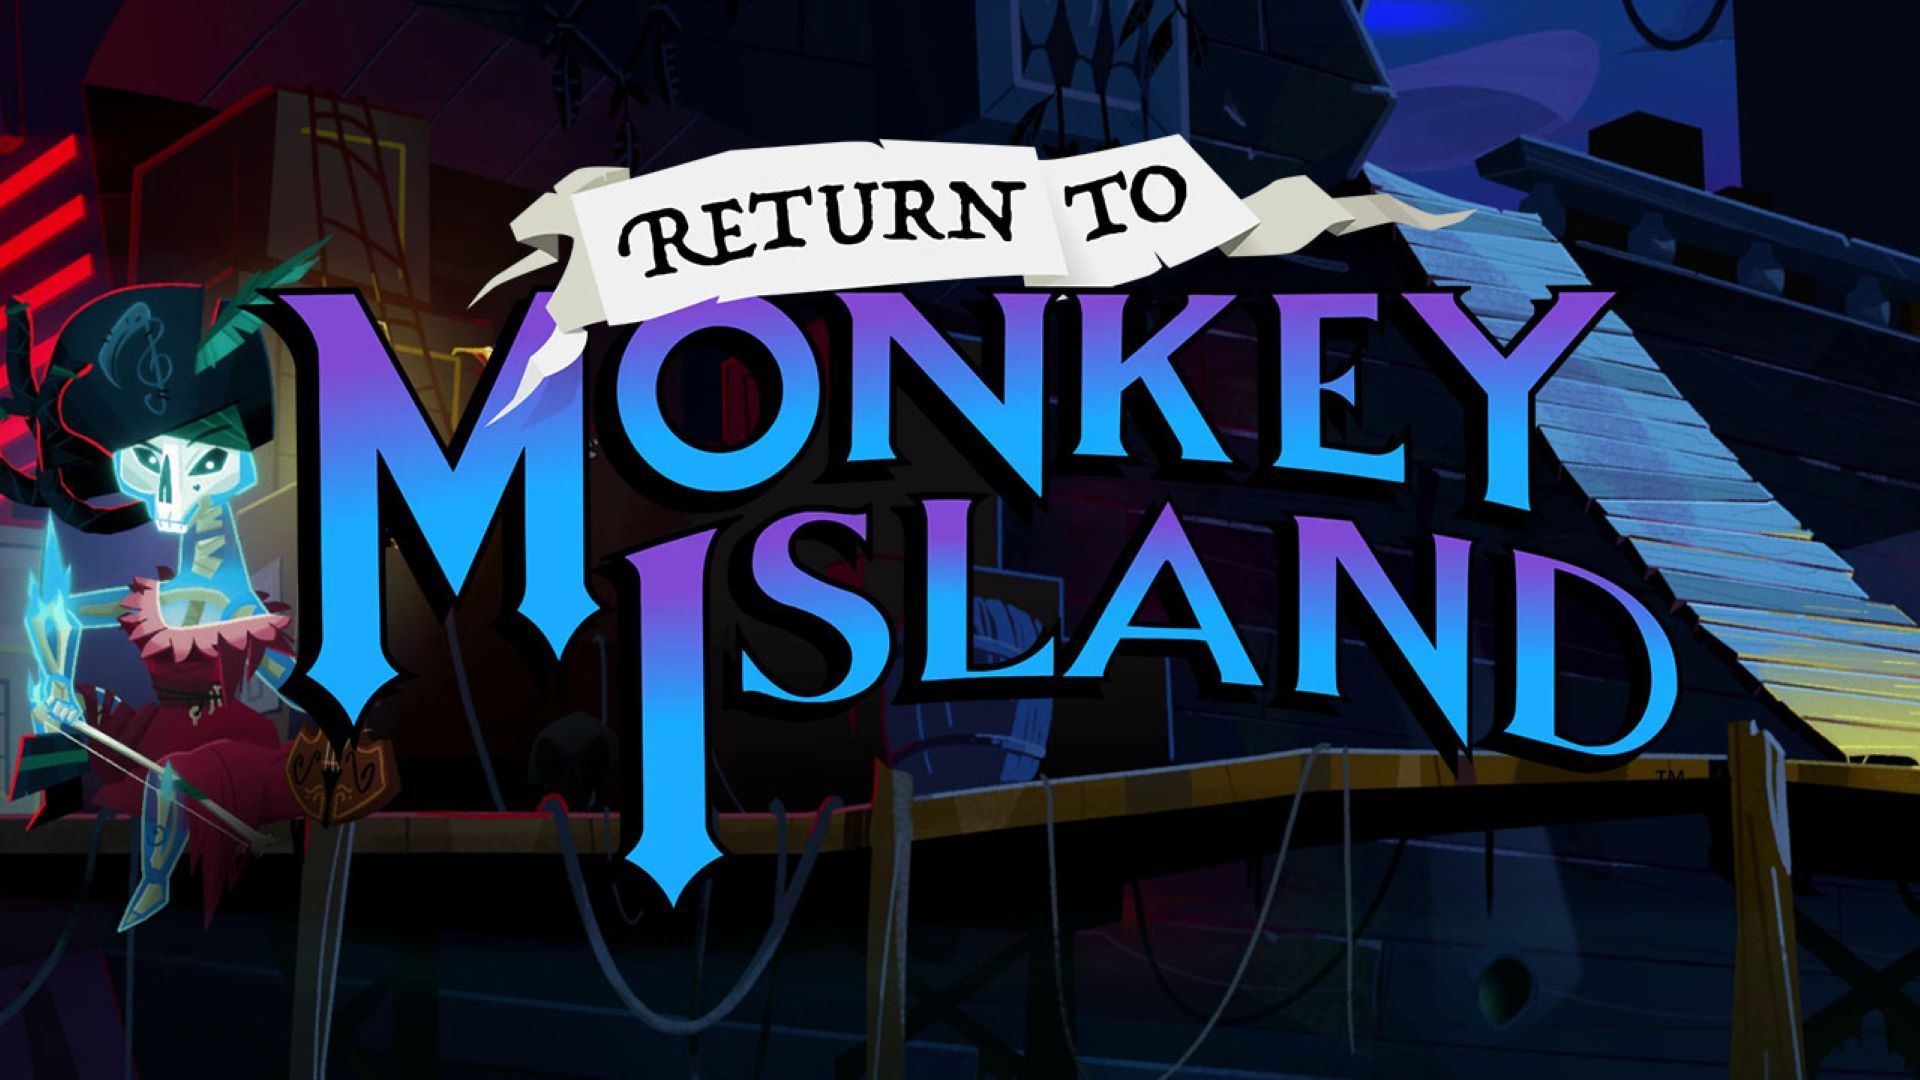 توضیح پایان مبهم مانکی آیلند ۲ در بازی Return to Monkey Island